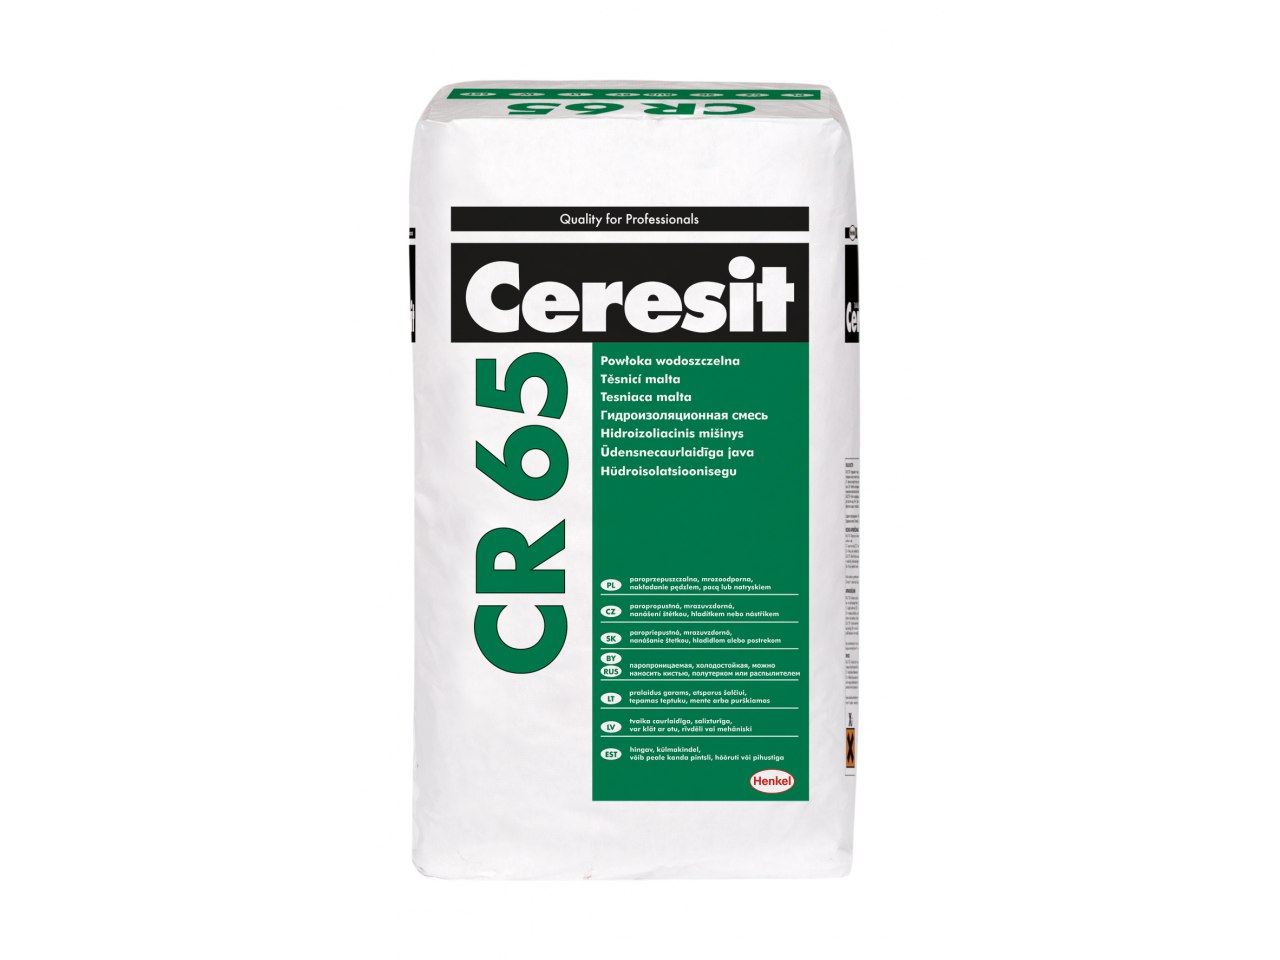 Vai Ceresit CE33 javas vietā var izmantot hidroizolāciju Ceresit CR65?